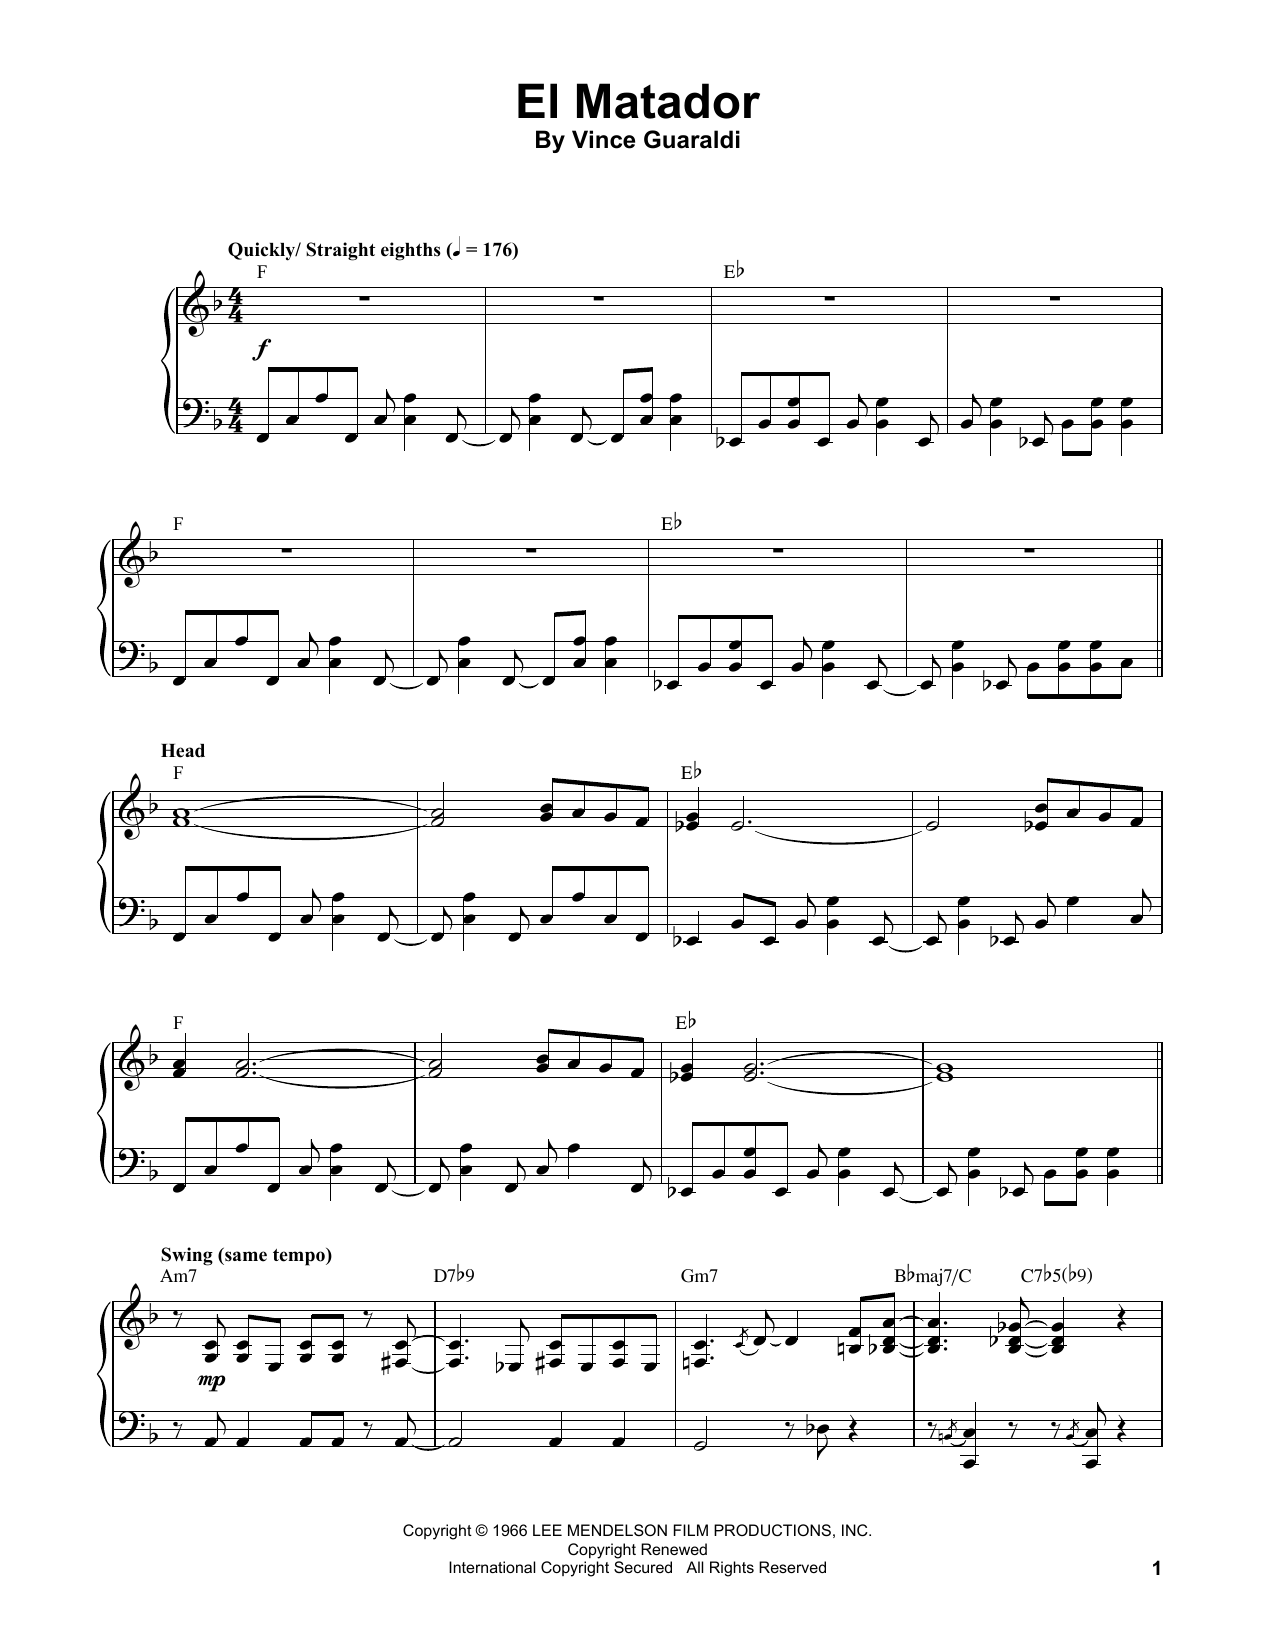 Vince Guaraldi El Matador Sheet Music Notes & Chords for Piano Transcription - Download or Print PDF